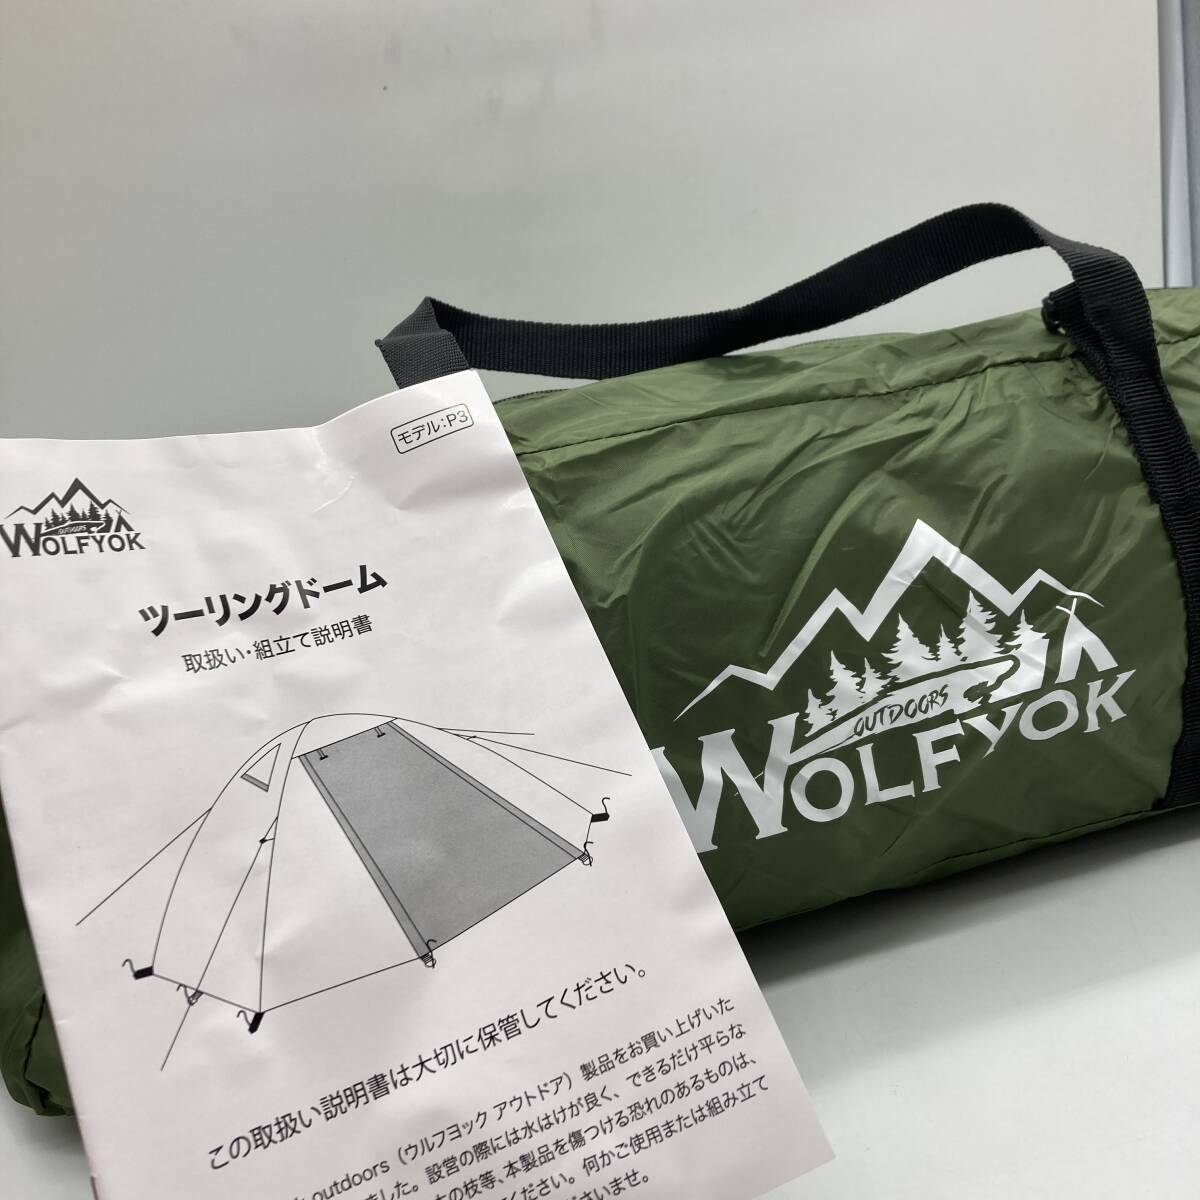 【未検品】wolfyok outdoors ツーリングドーム キャンプテント テント /Y15999-K3の画像1